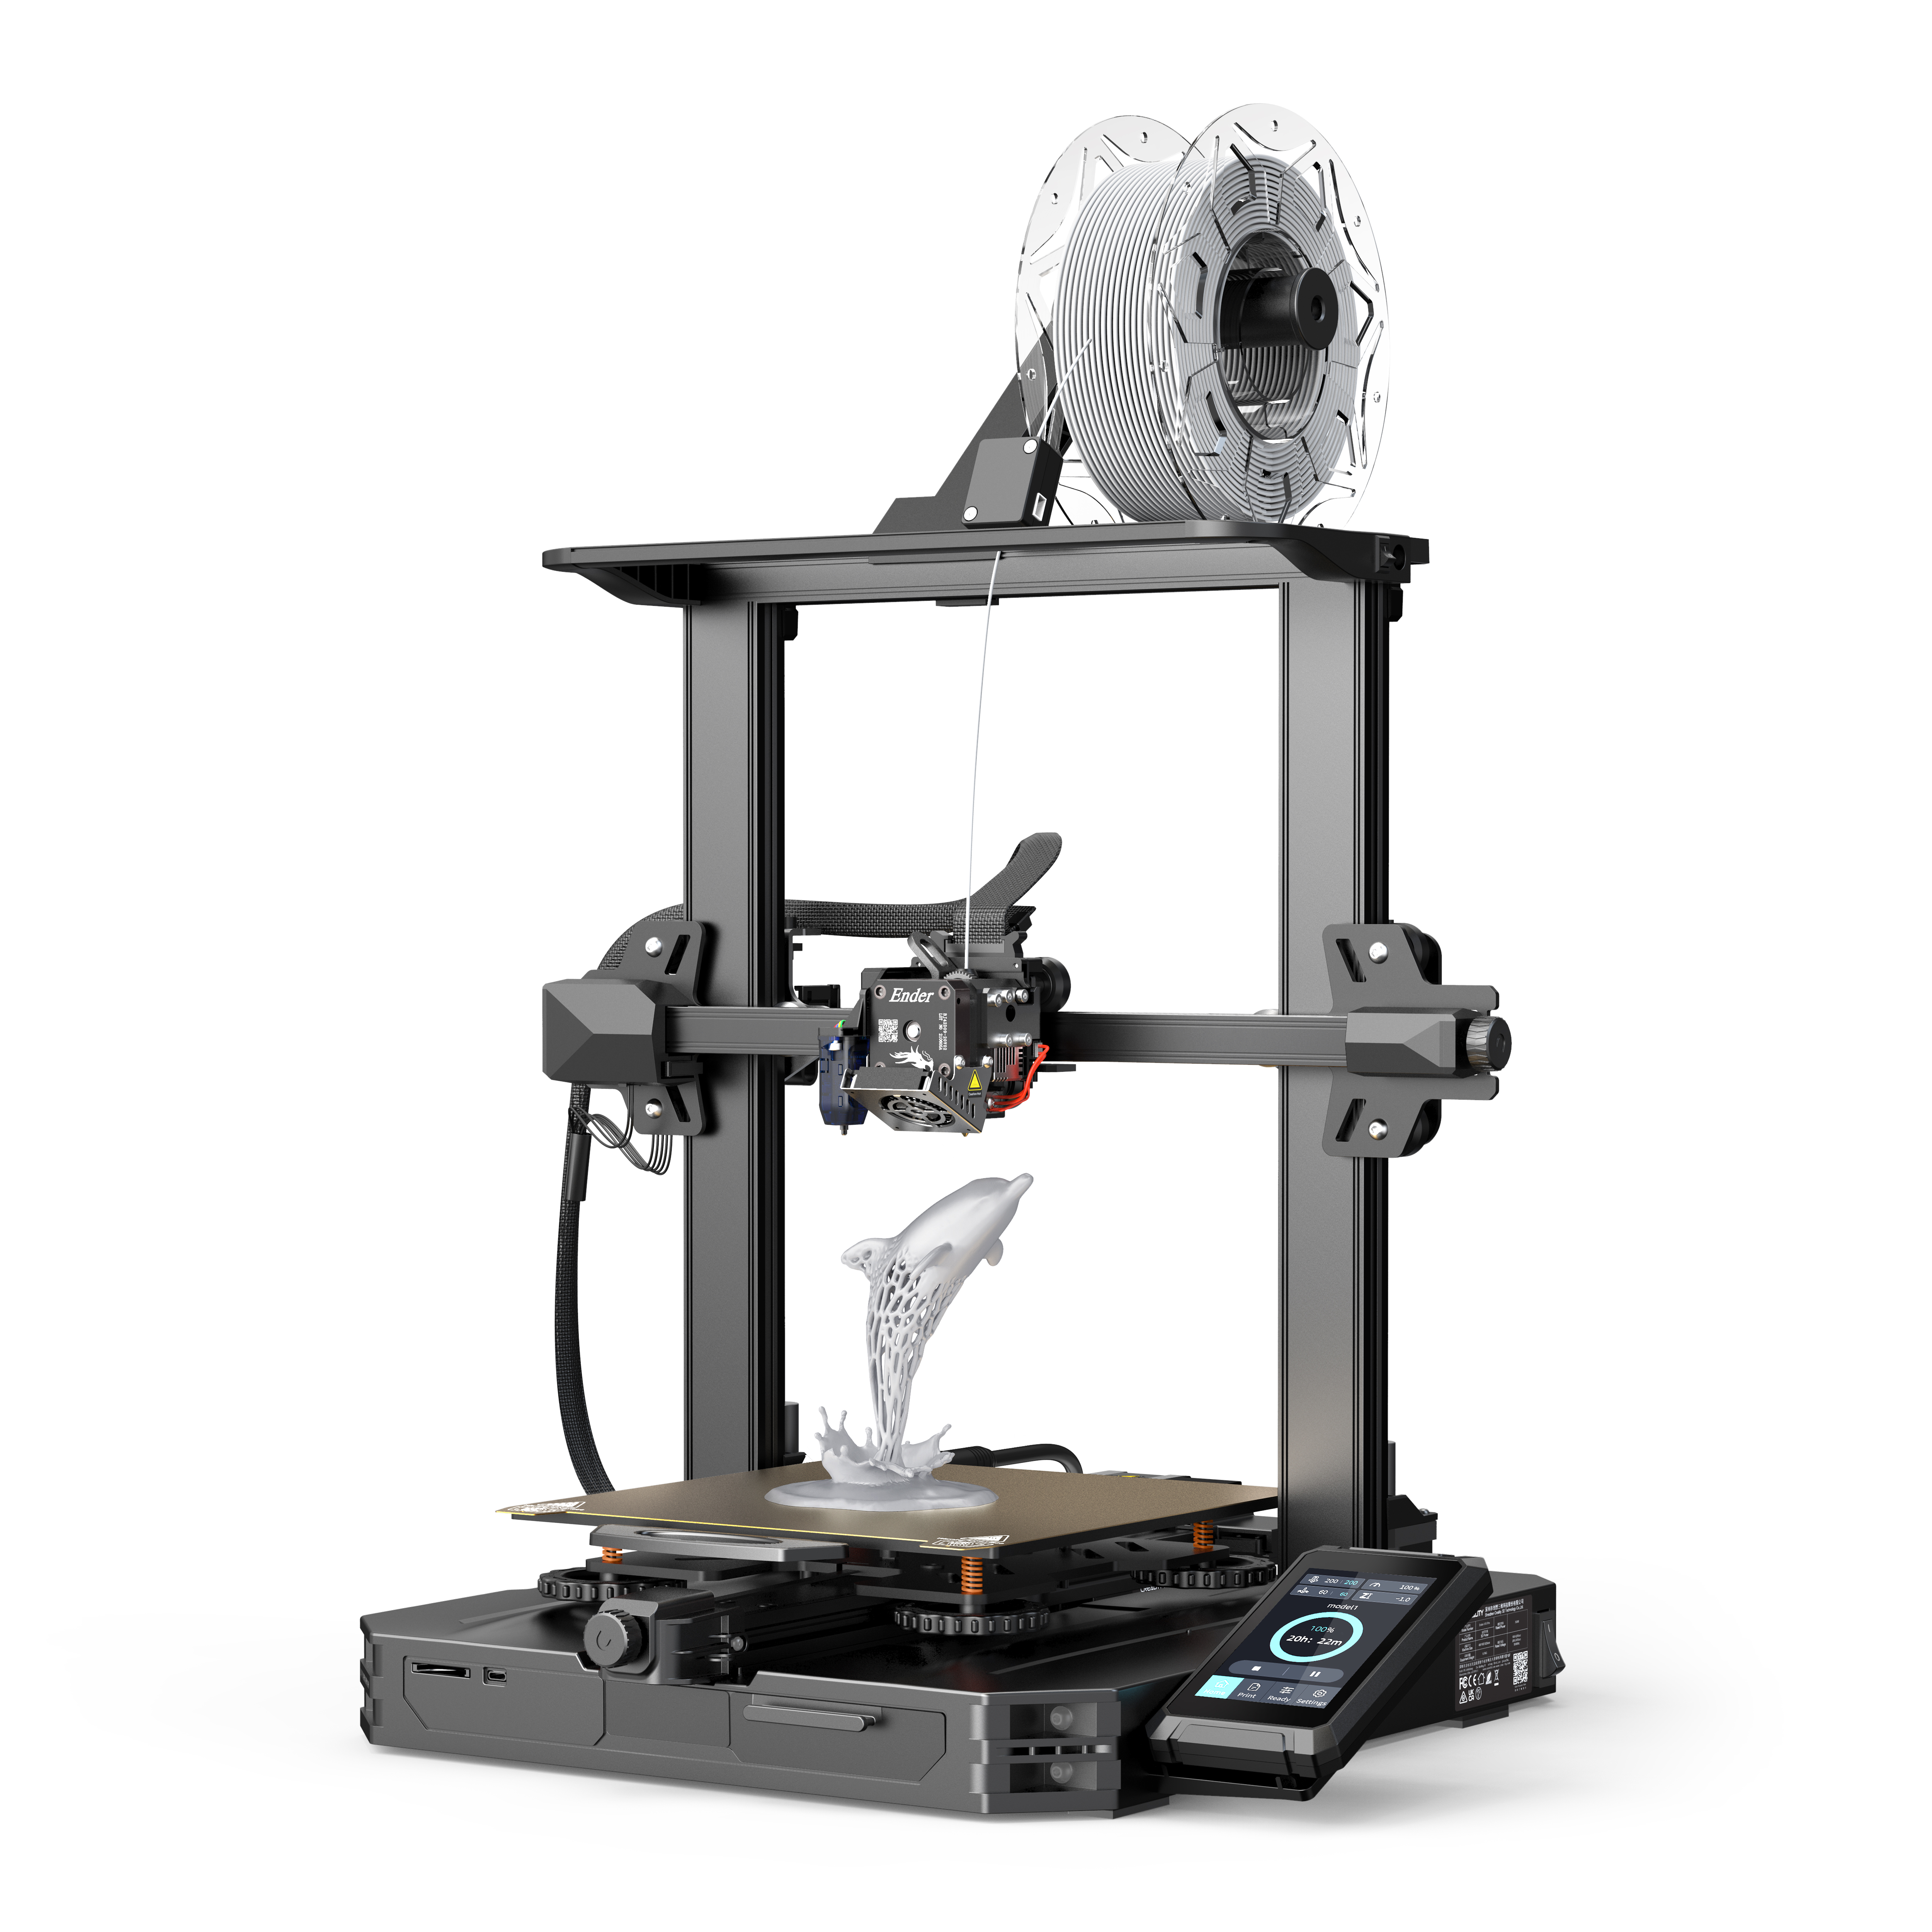 Creality-Ender3-S1-Pro-3Dprinter-UK-forsale.jpg